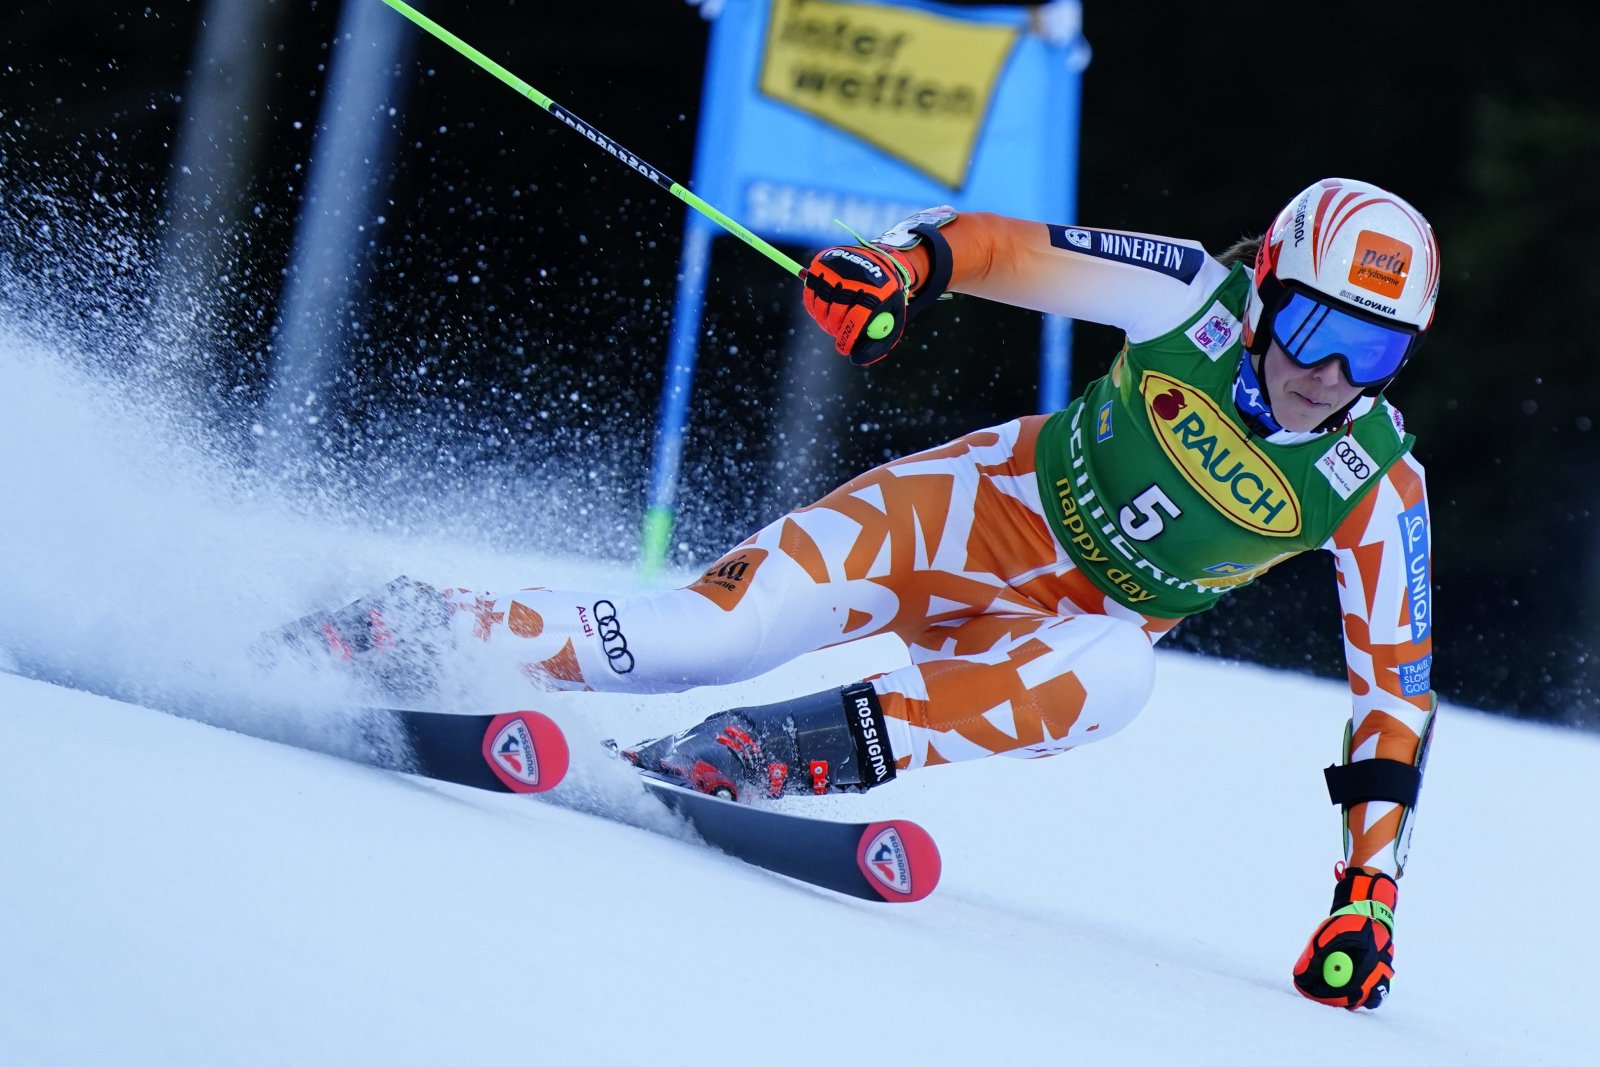 Semmering 2022: Vlhová obsadila v obrovskom slalome 2. miesto, zvíťazila Shiffrinová